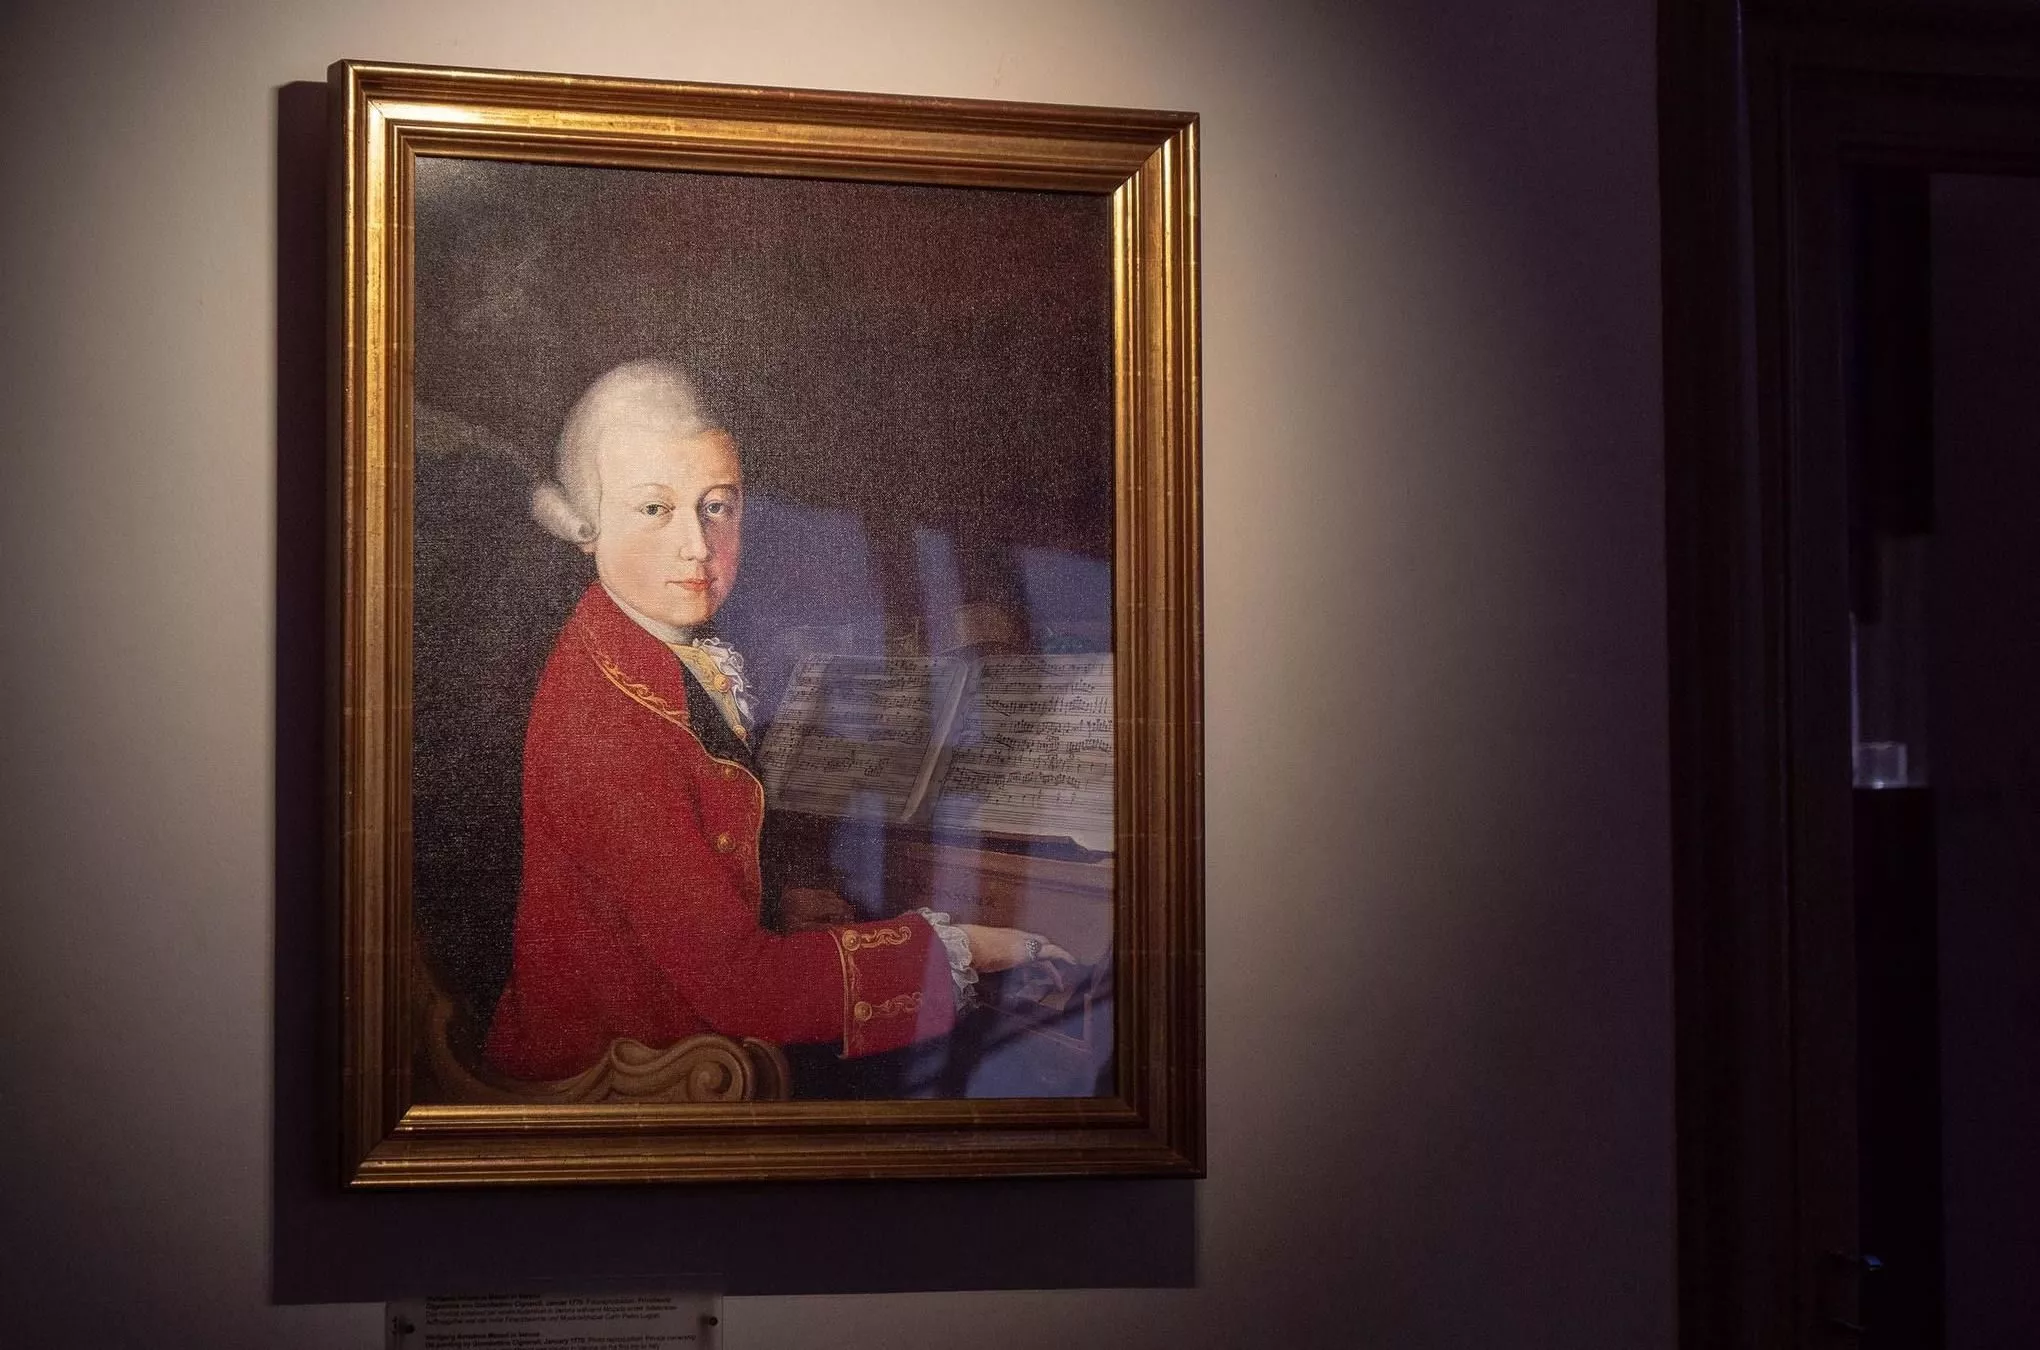 Das berühmteste Salzburger Wunderkind: Wolfang Amadé Mozart am Klavier, gemalt von seinem Schwager Joseph Lange